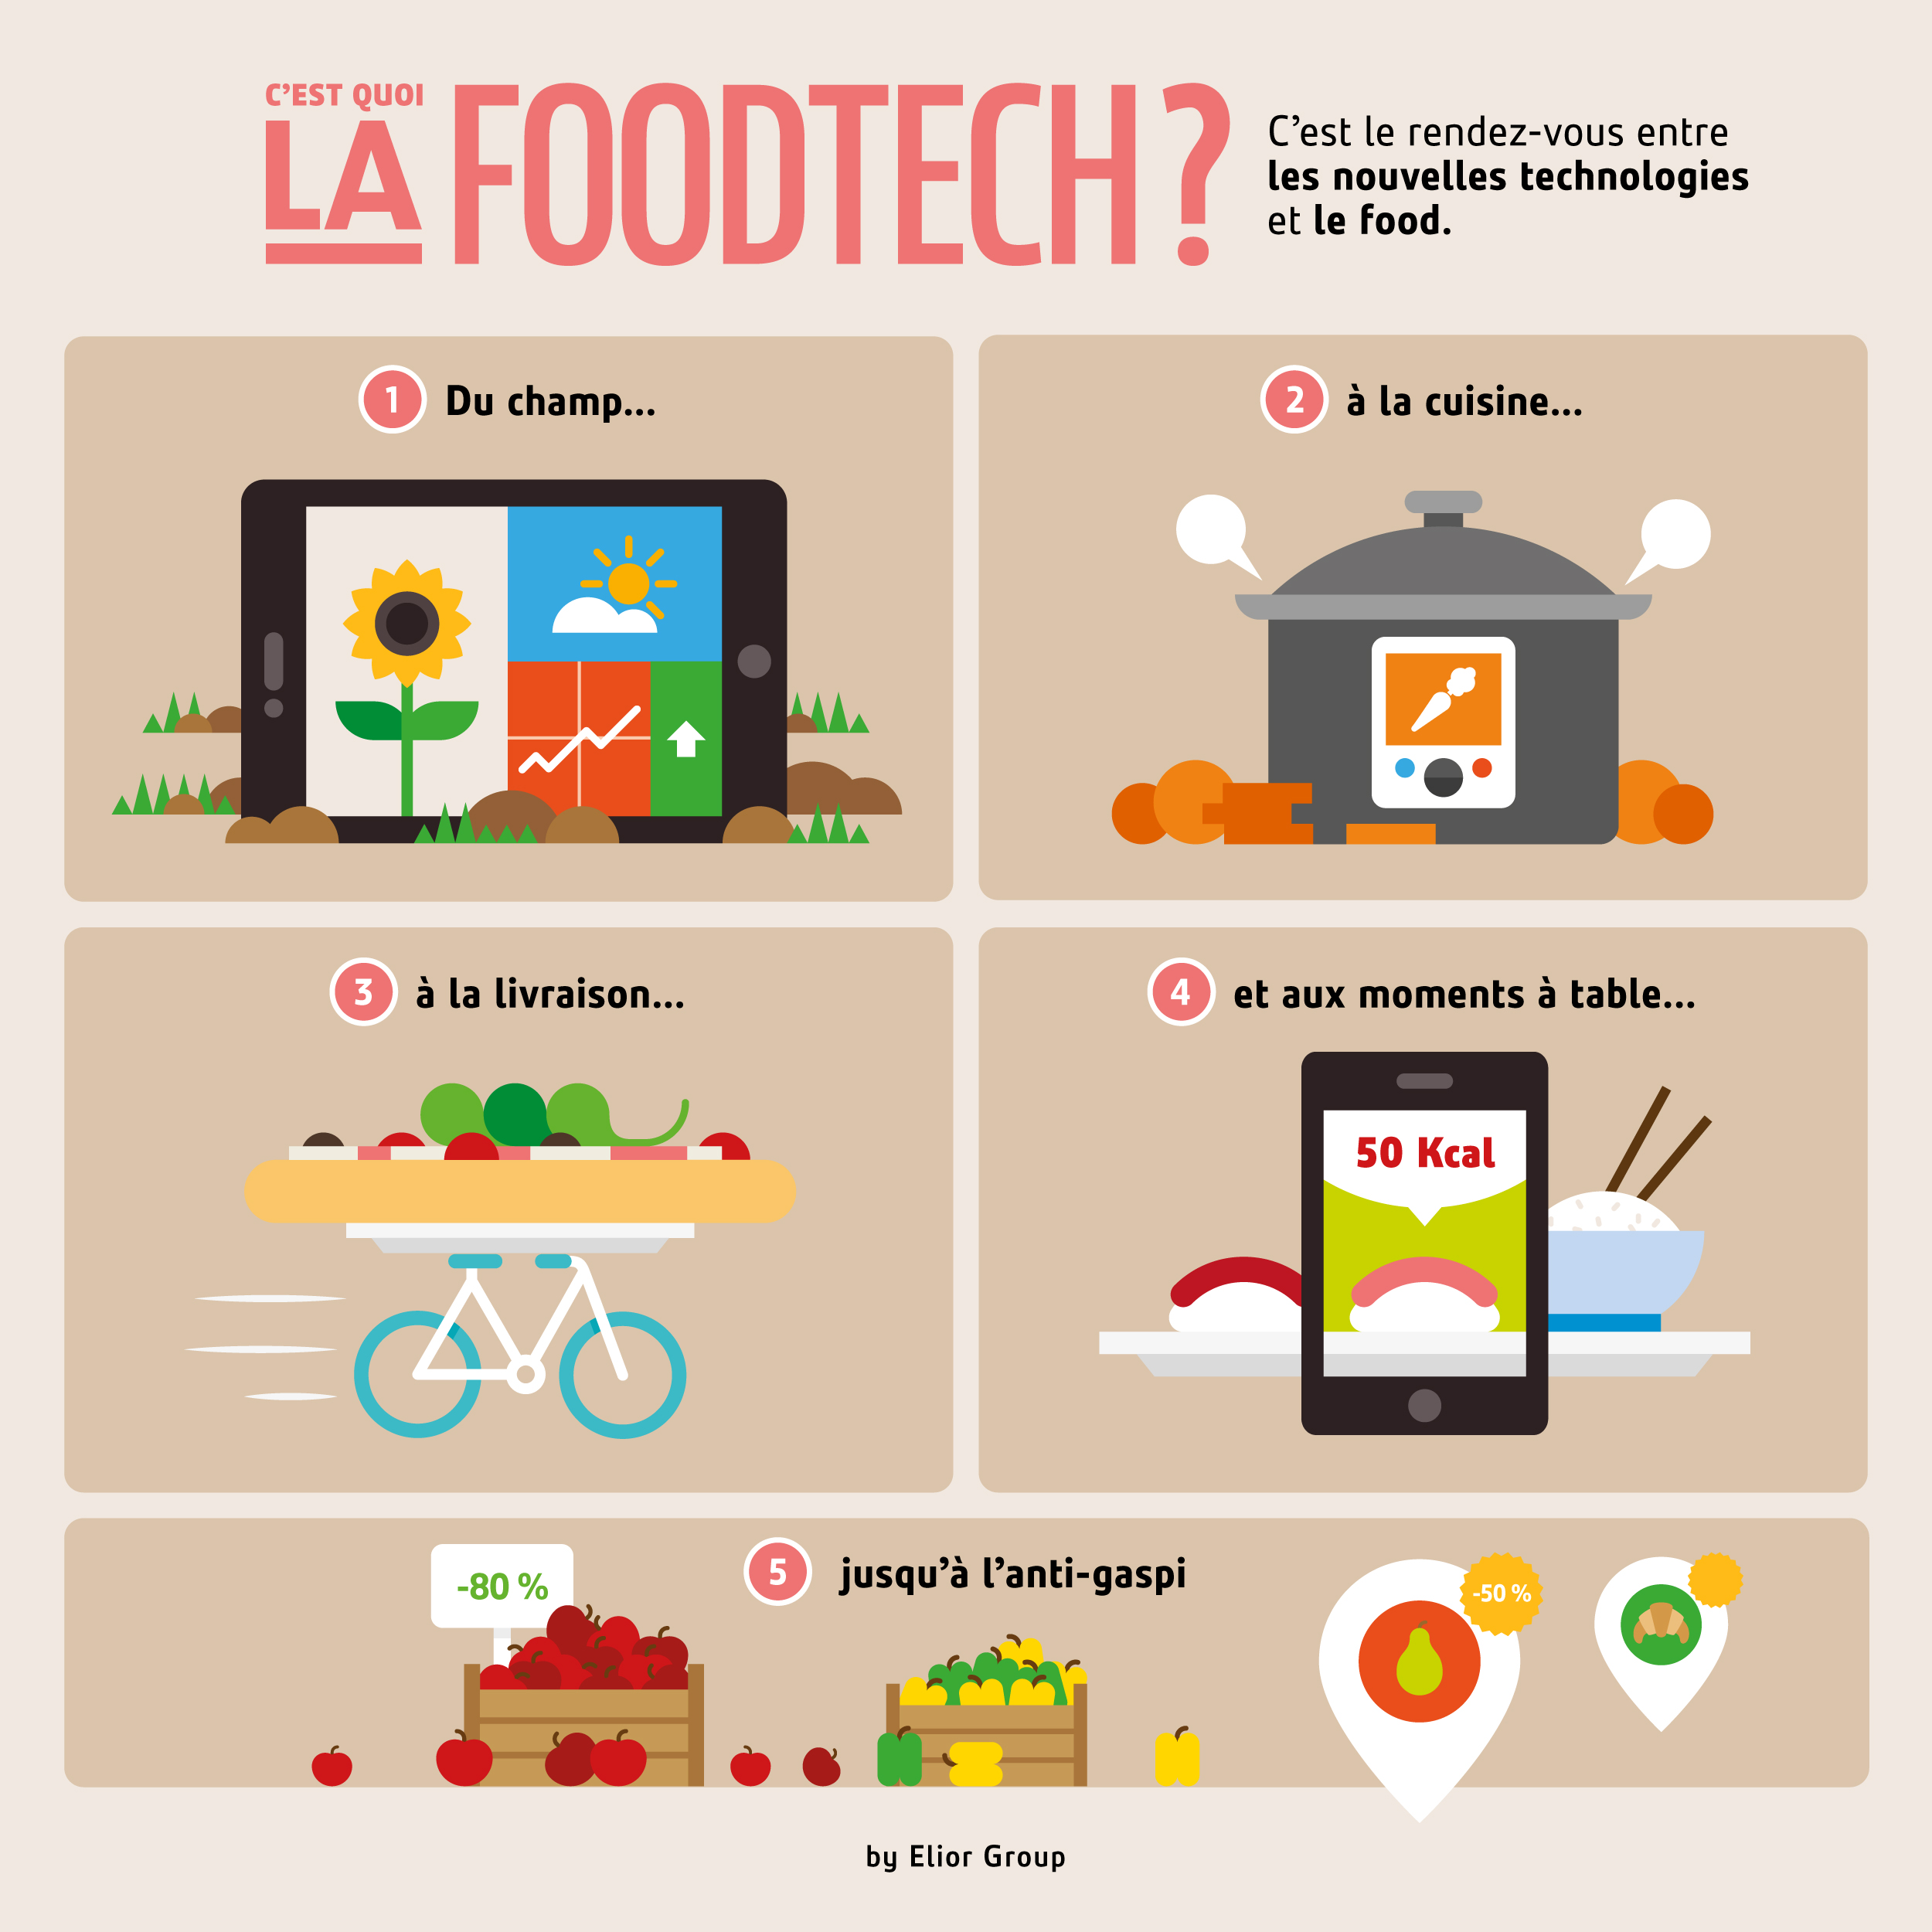 C'est quoi la FoodTech - Définition  infographie Elior Group